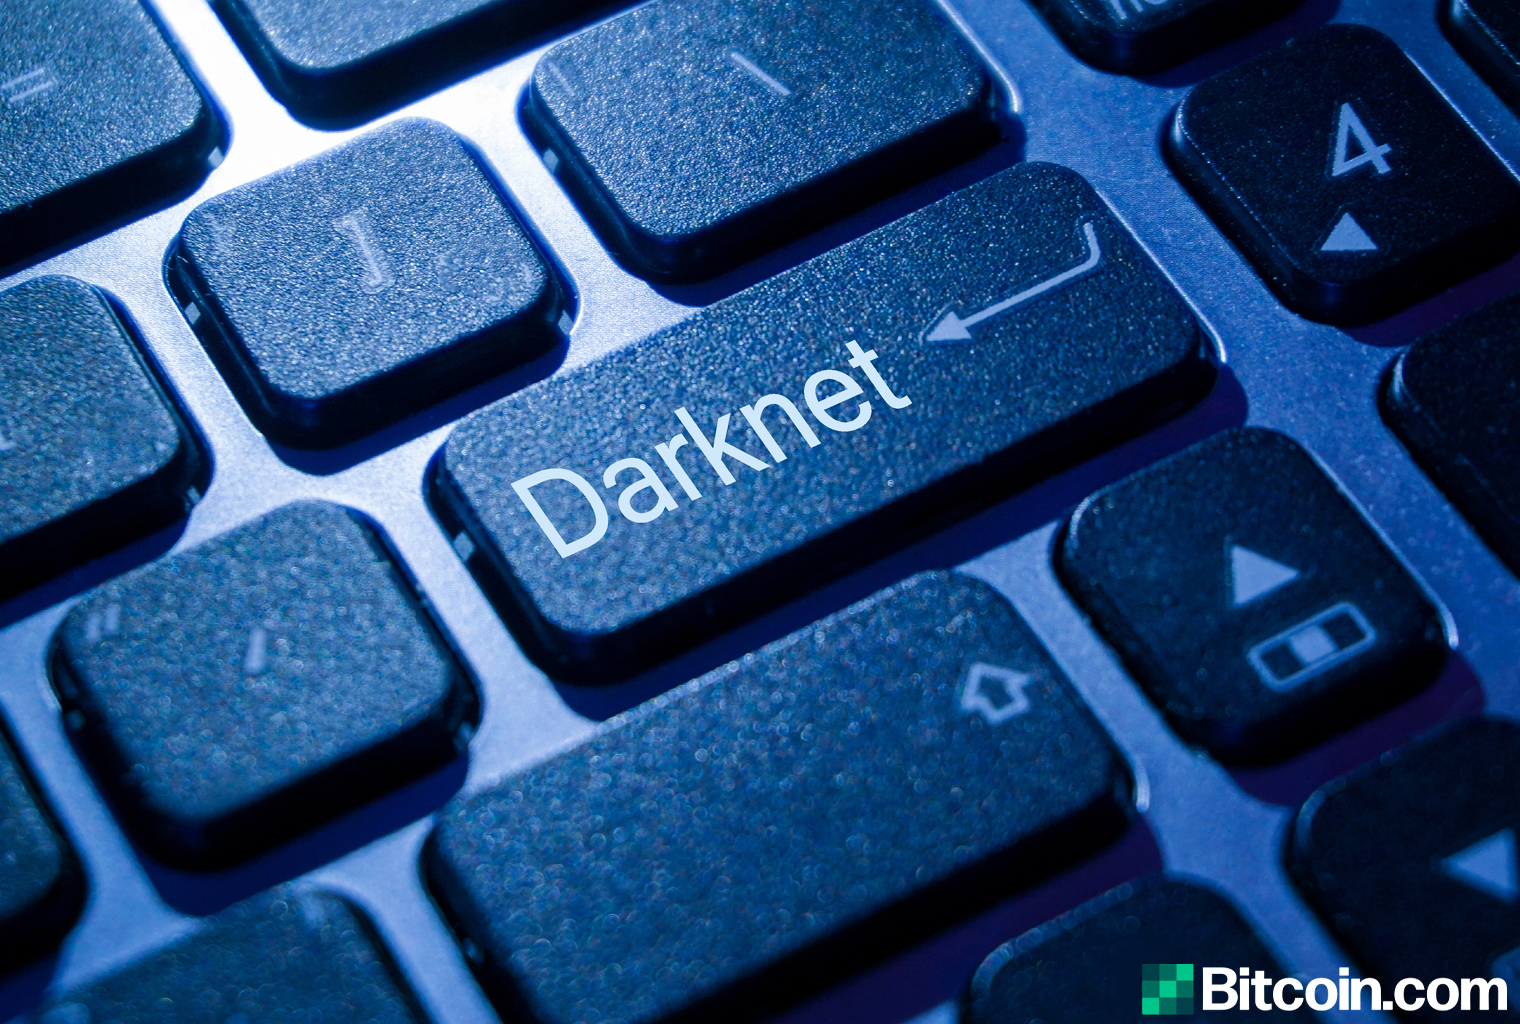 Darknet Список Сайтов